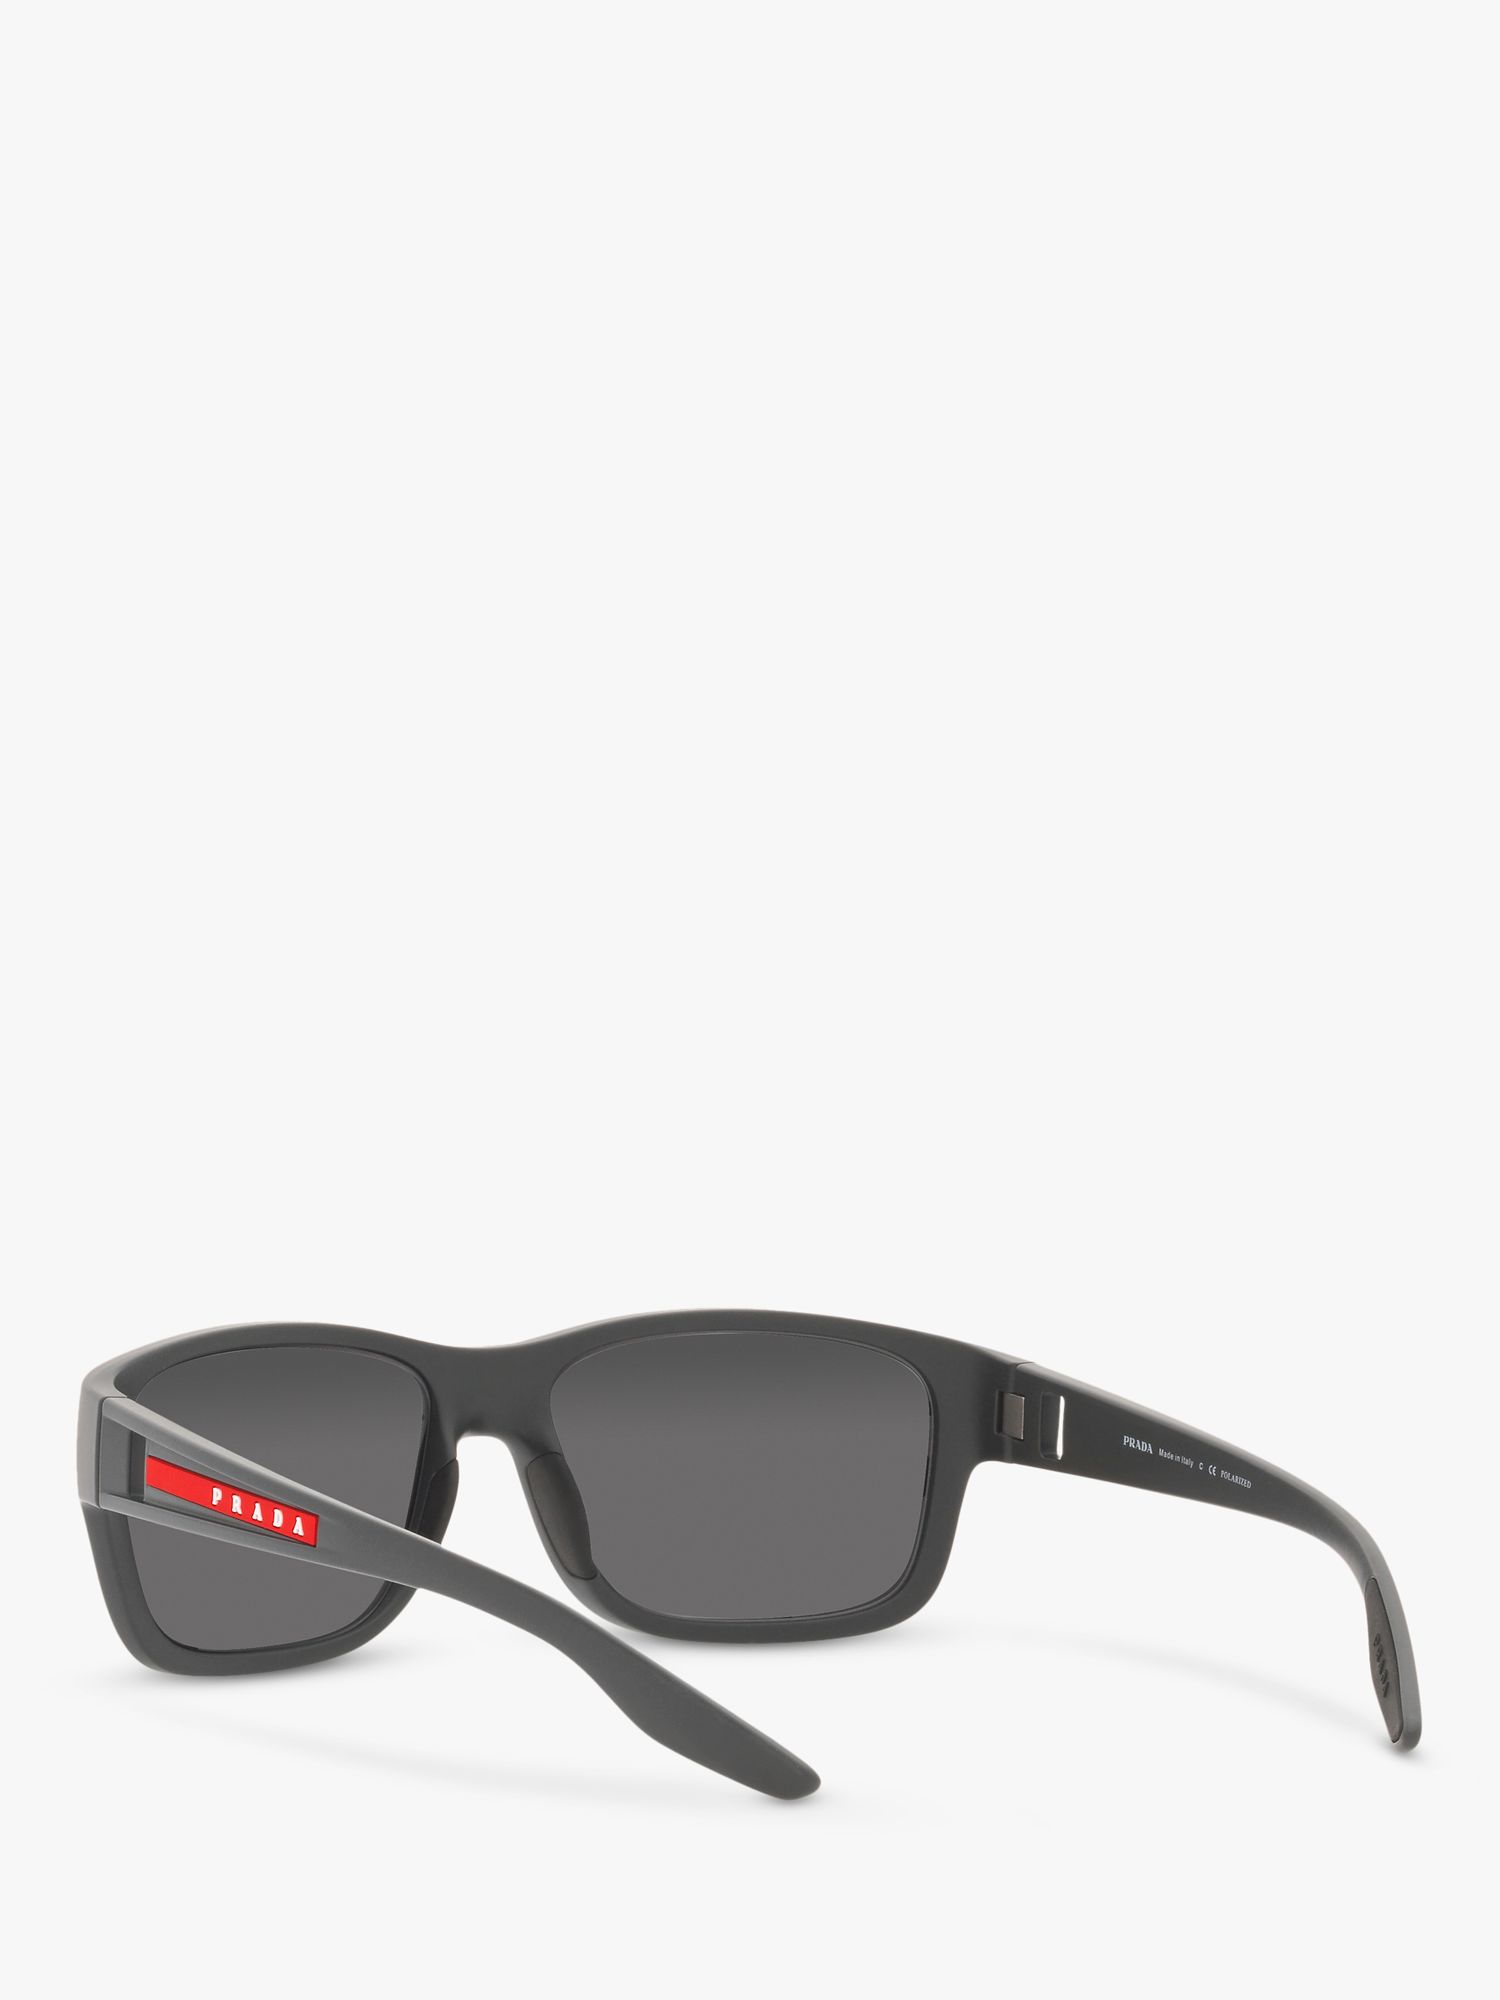 Buy Prada Linea Rossa PS 01WS Men's Pillow Polarised Sunglasses Online at johnlewis.com